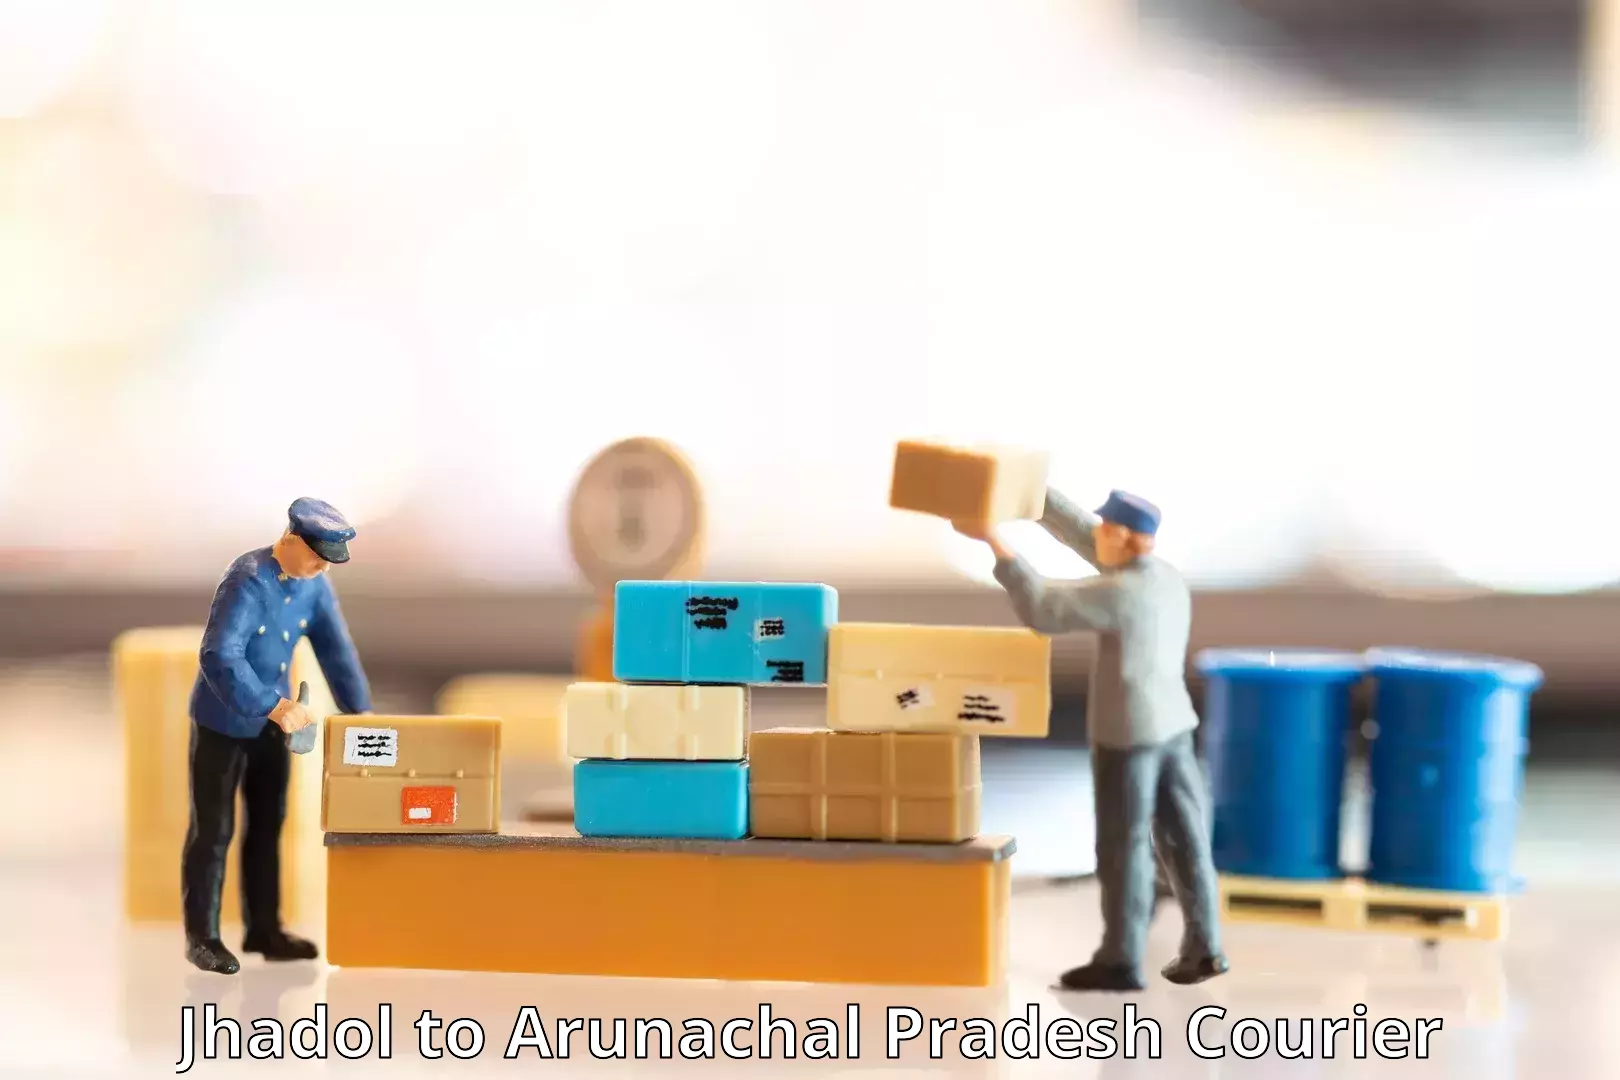 Efficient parcel tracking Jhadol to Arunachal Pradesh